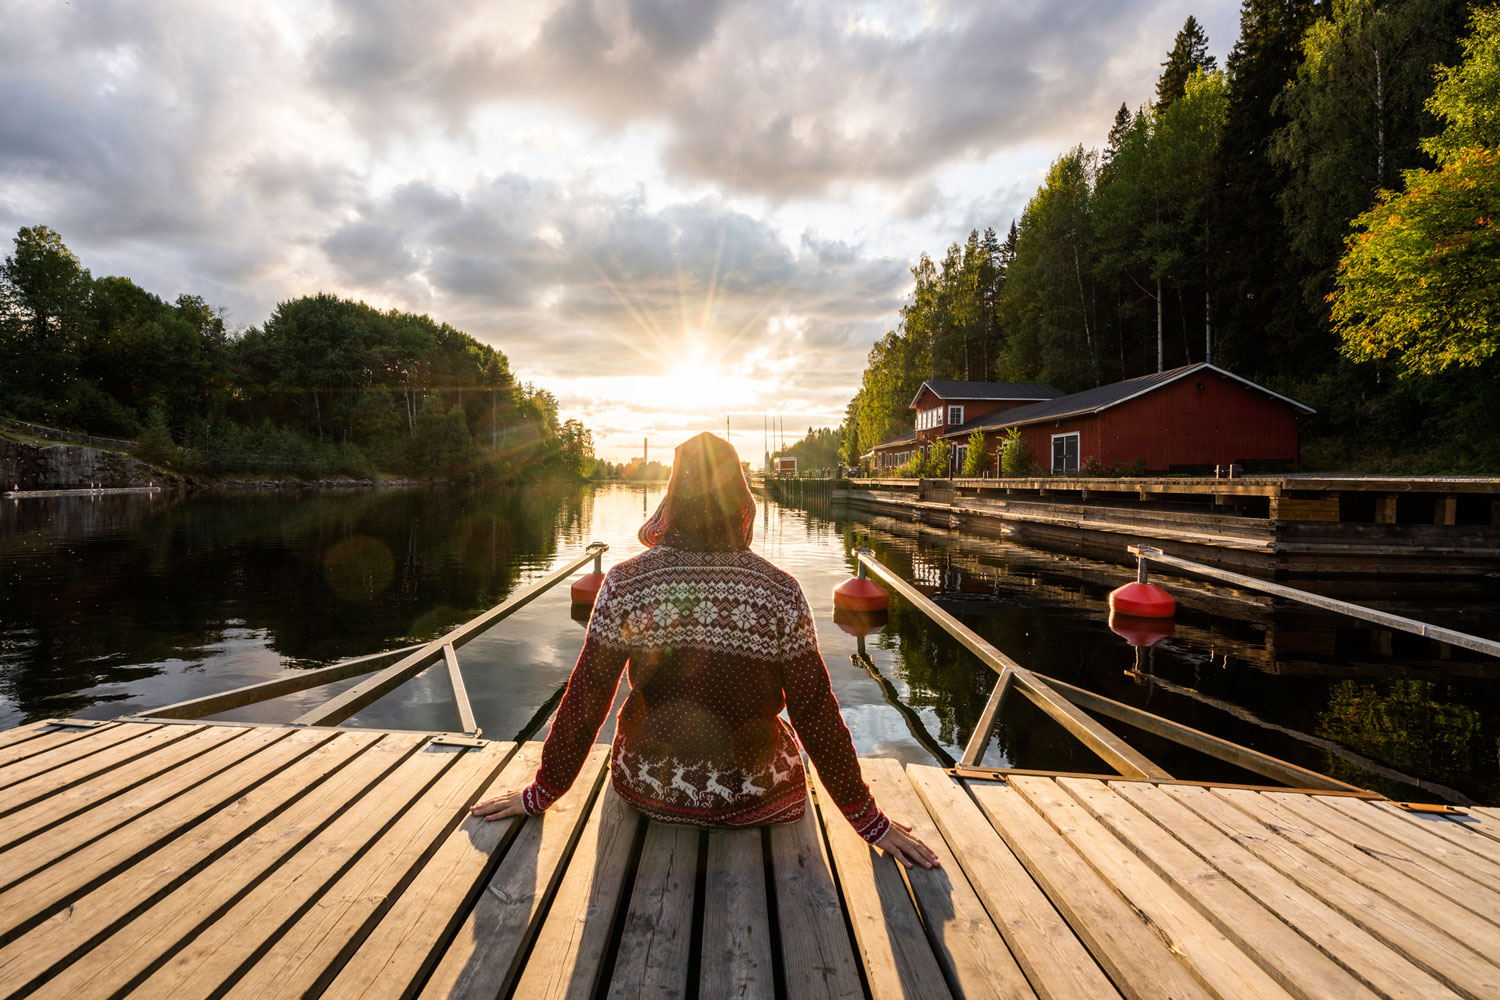 Finnország, ahol boldogok az emberek (Getty Images)